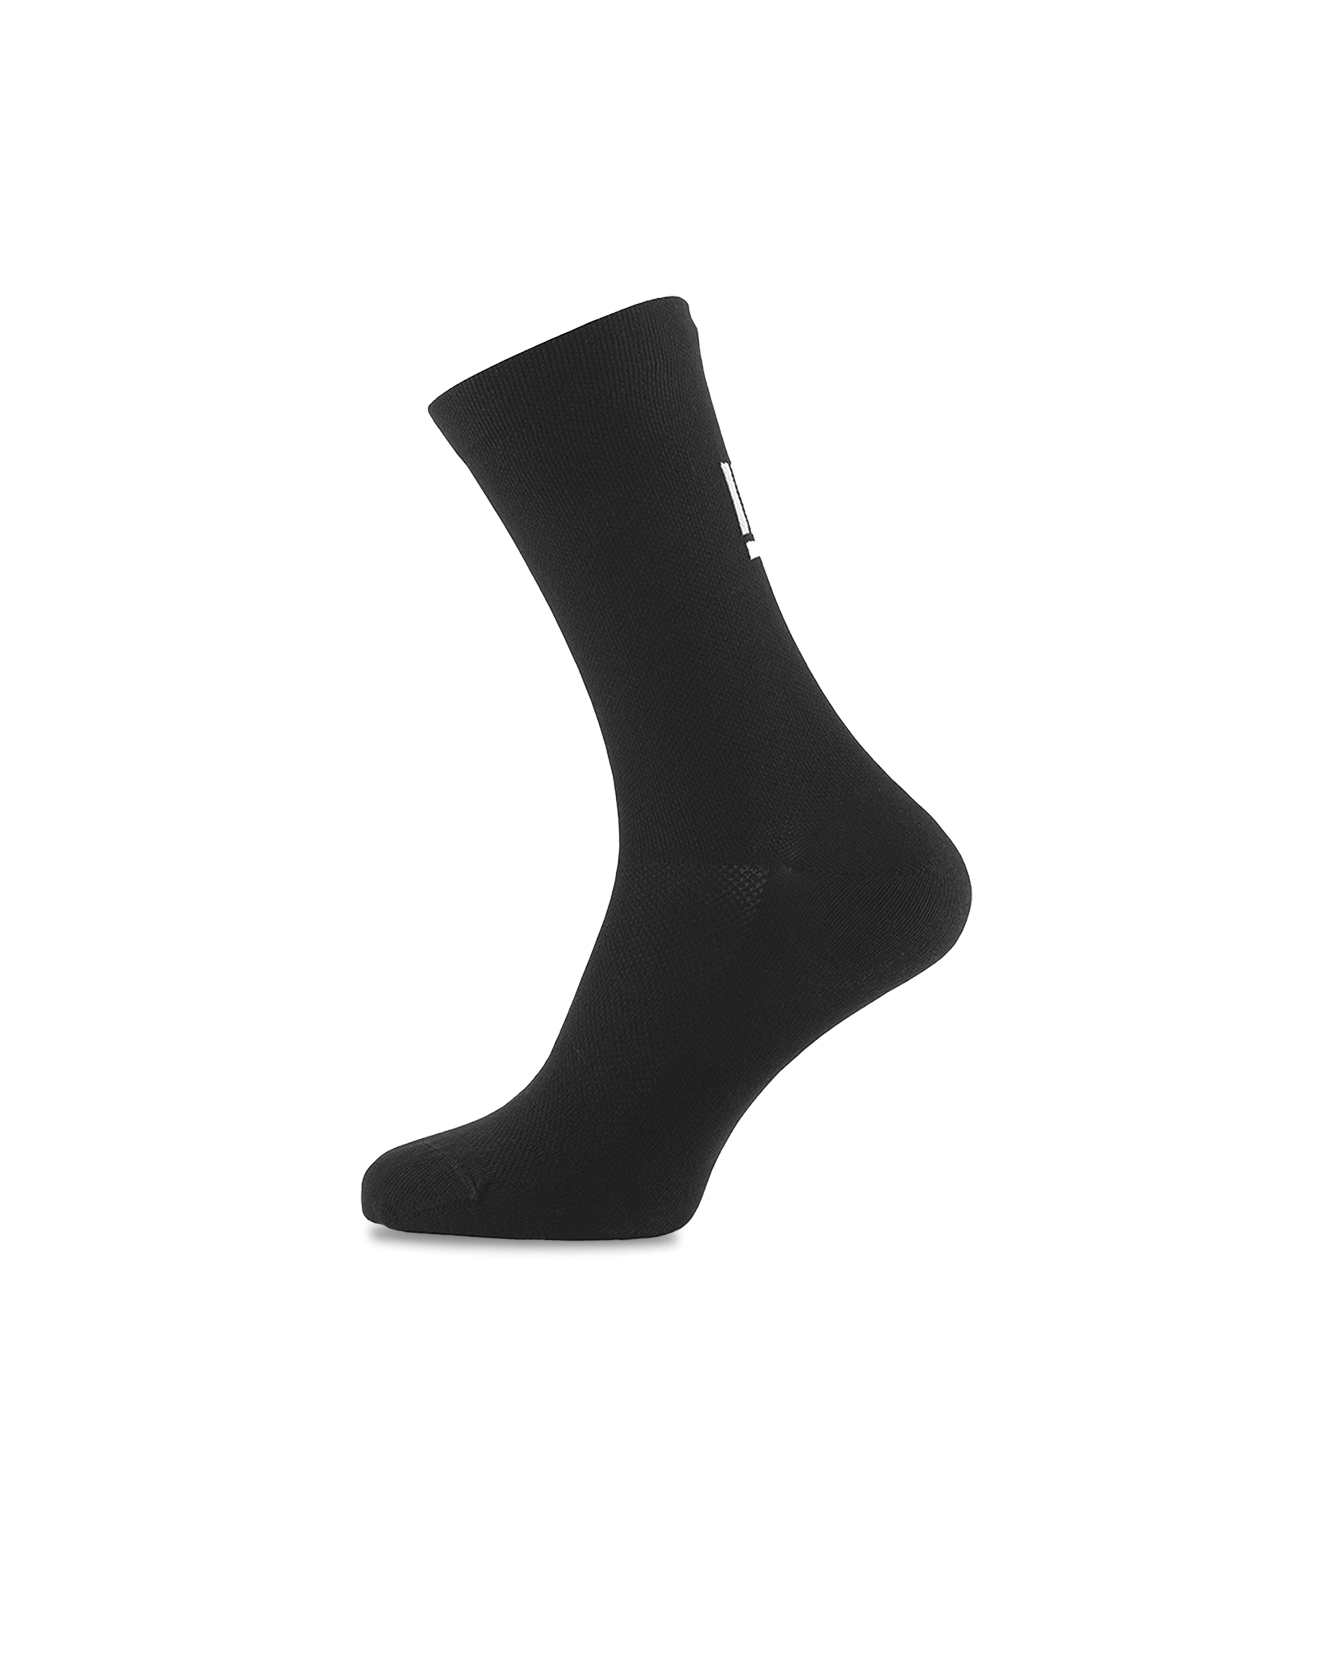 black-cycling-socks-5-pack-sockeloen